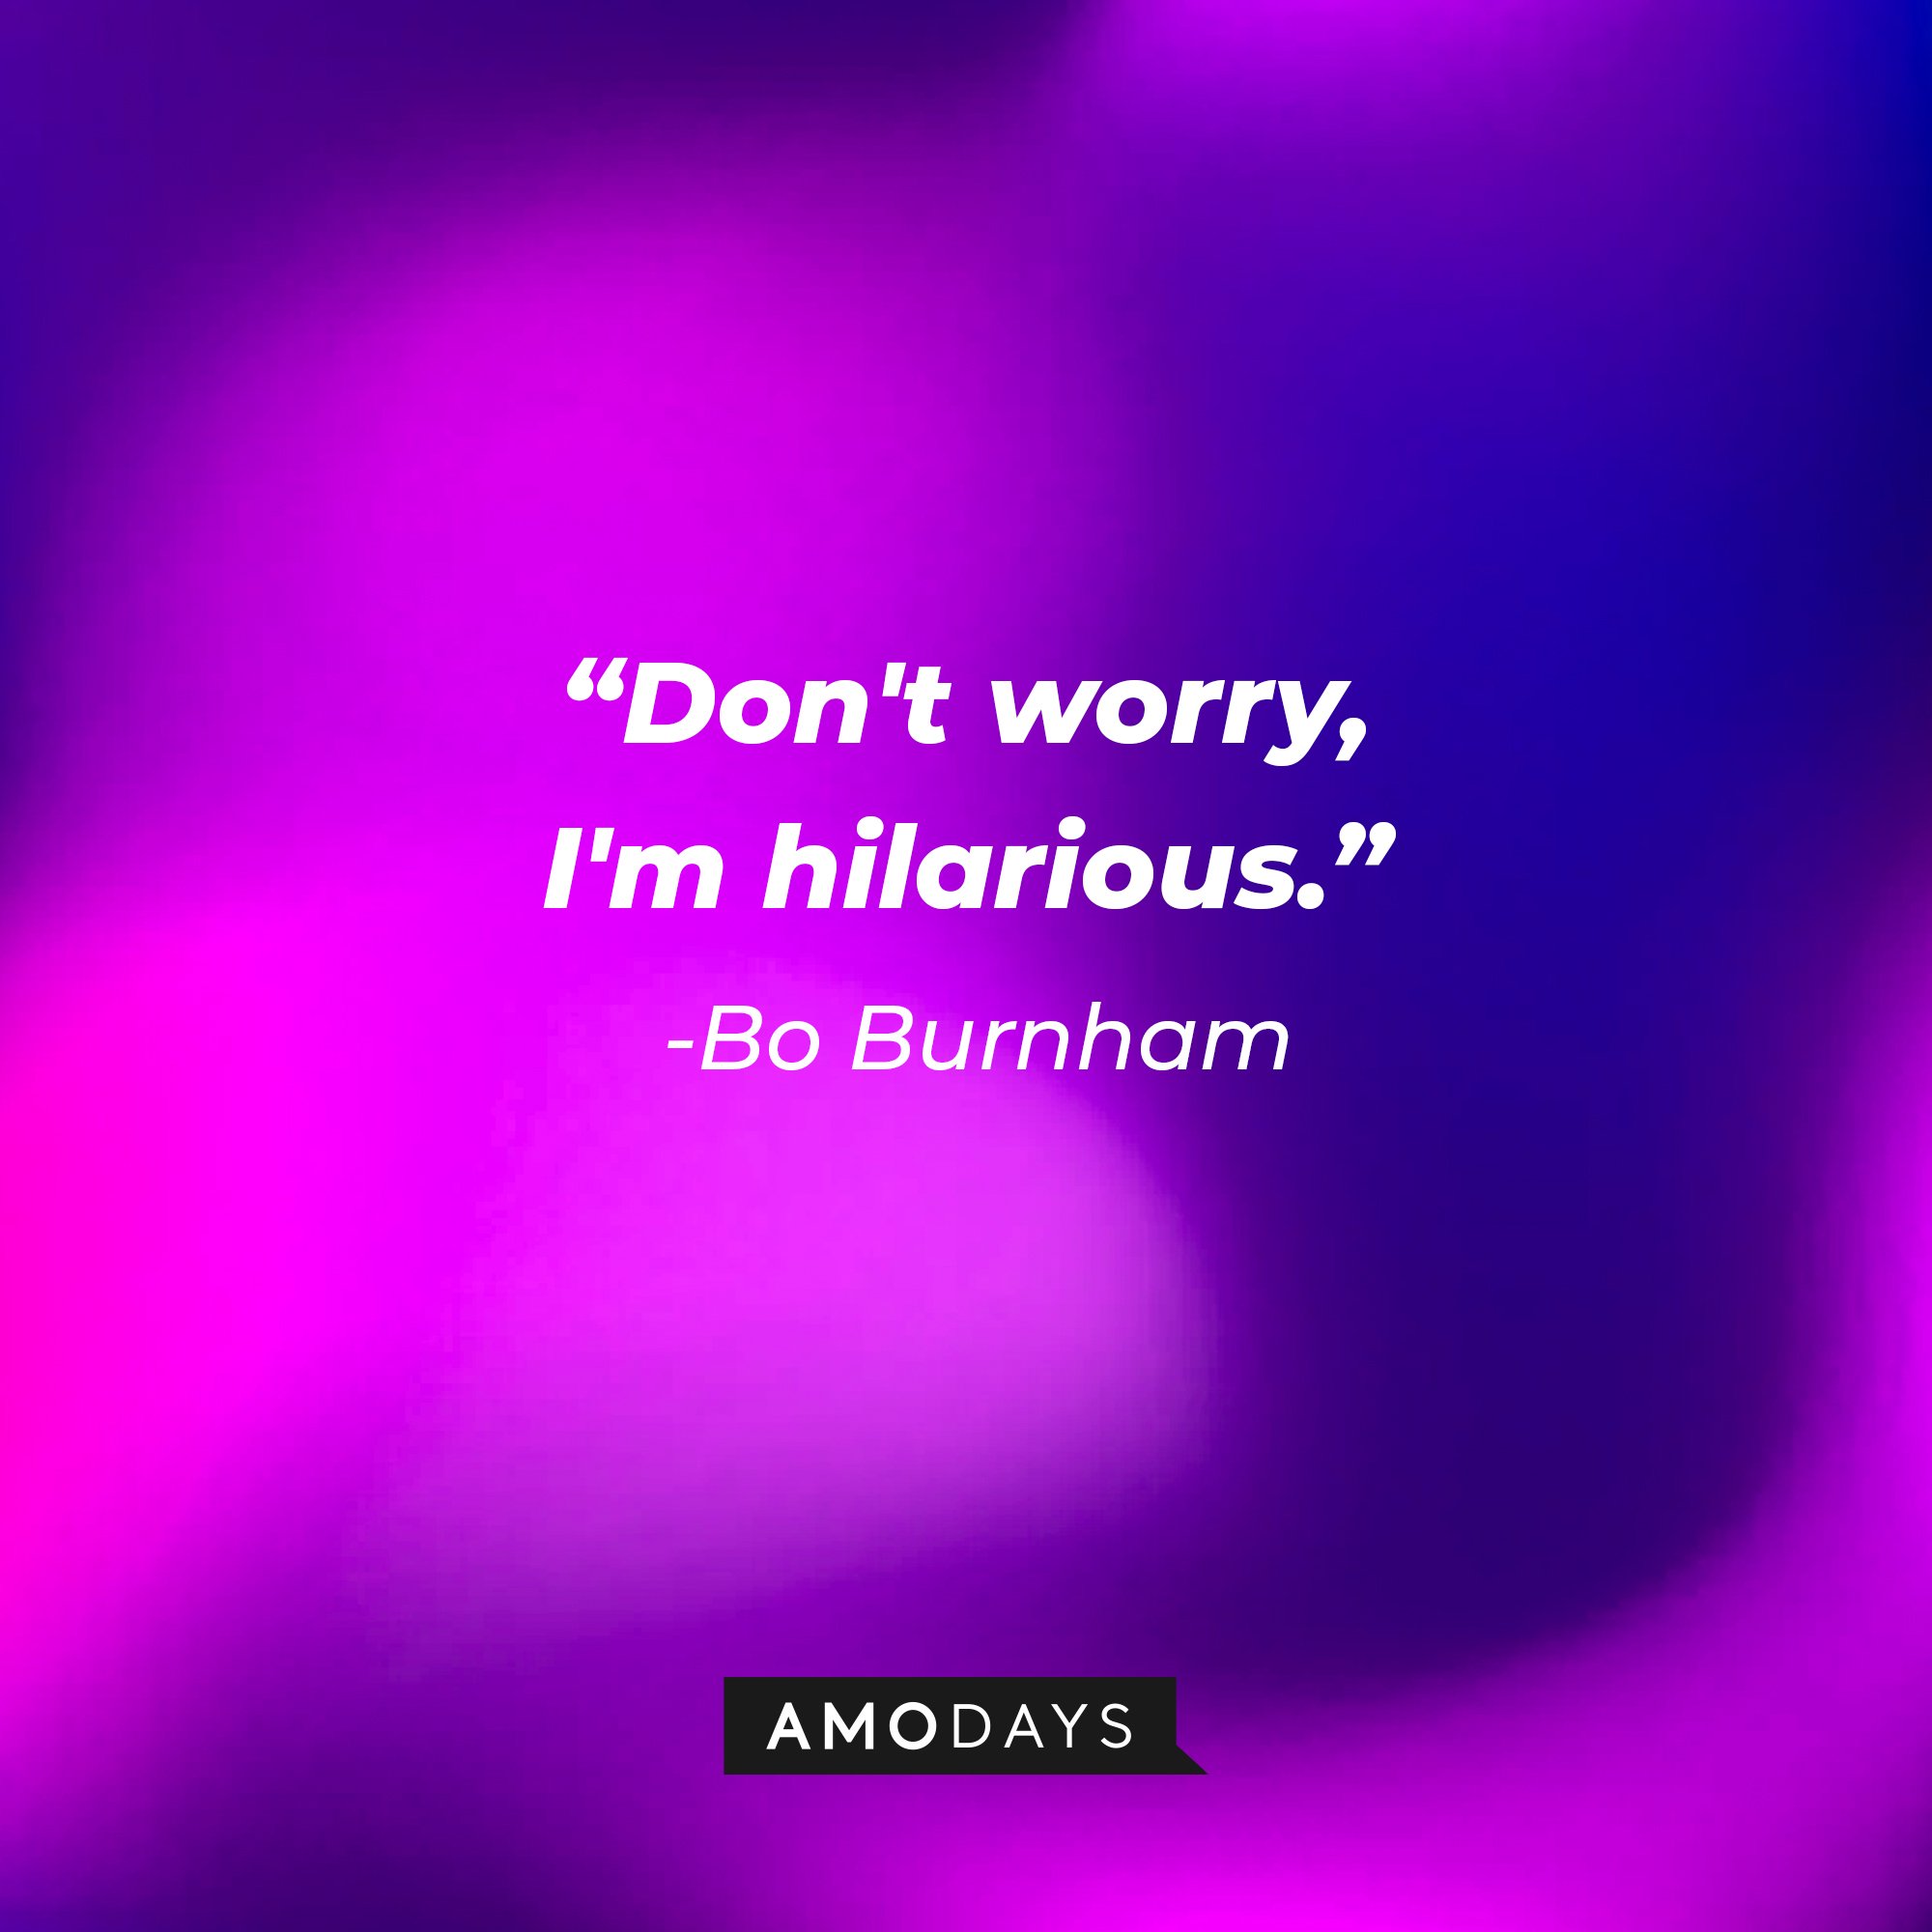 Bo Burnham’s quote: "Don't worry, I'm hilarious." | Image: AmoDays